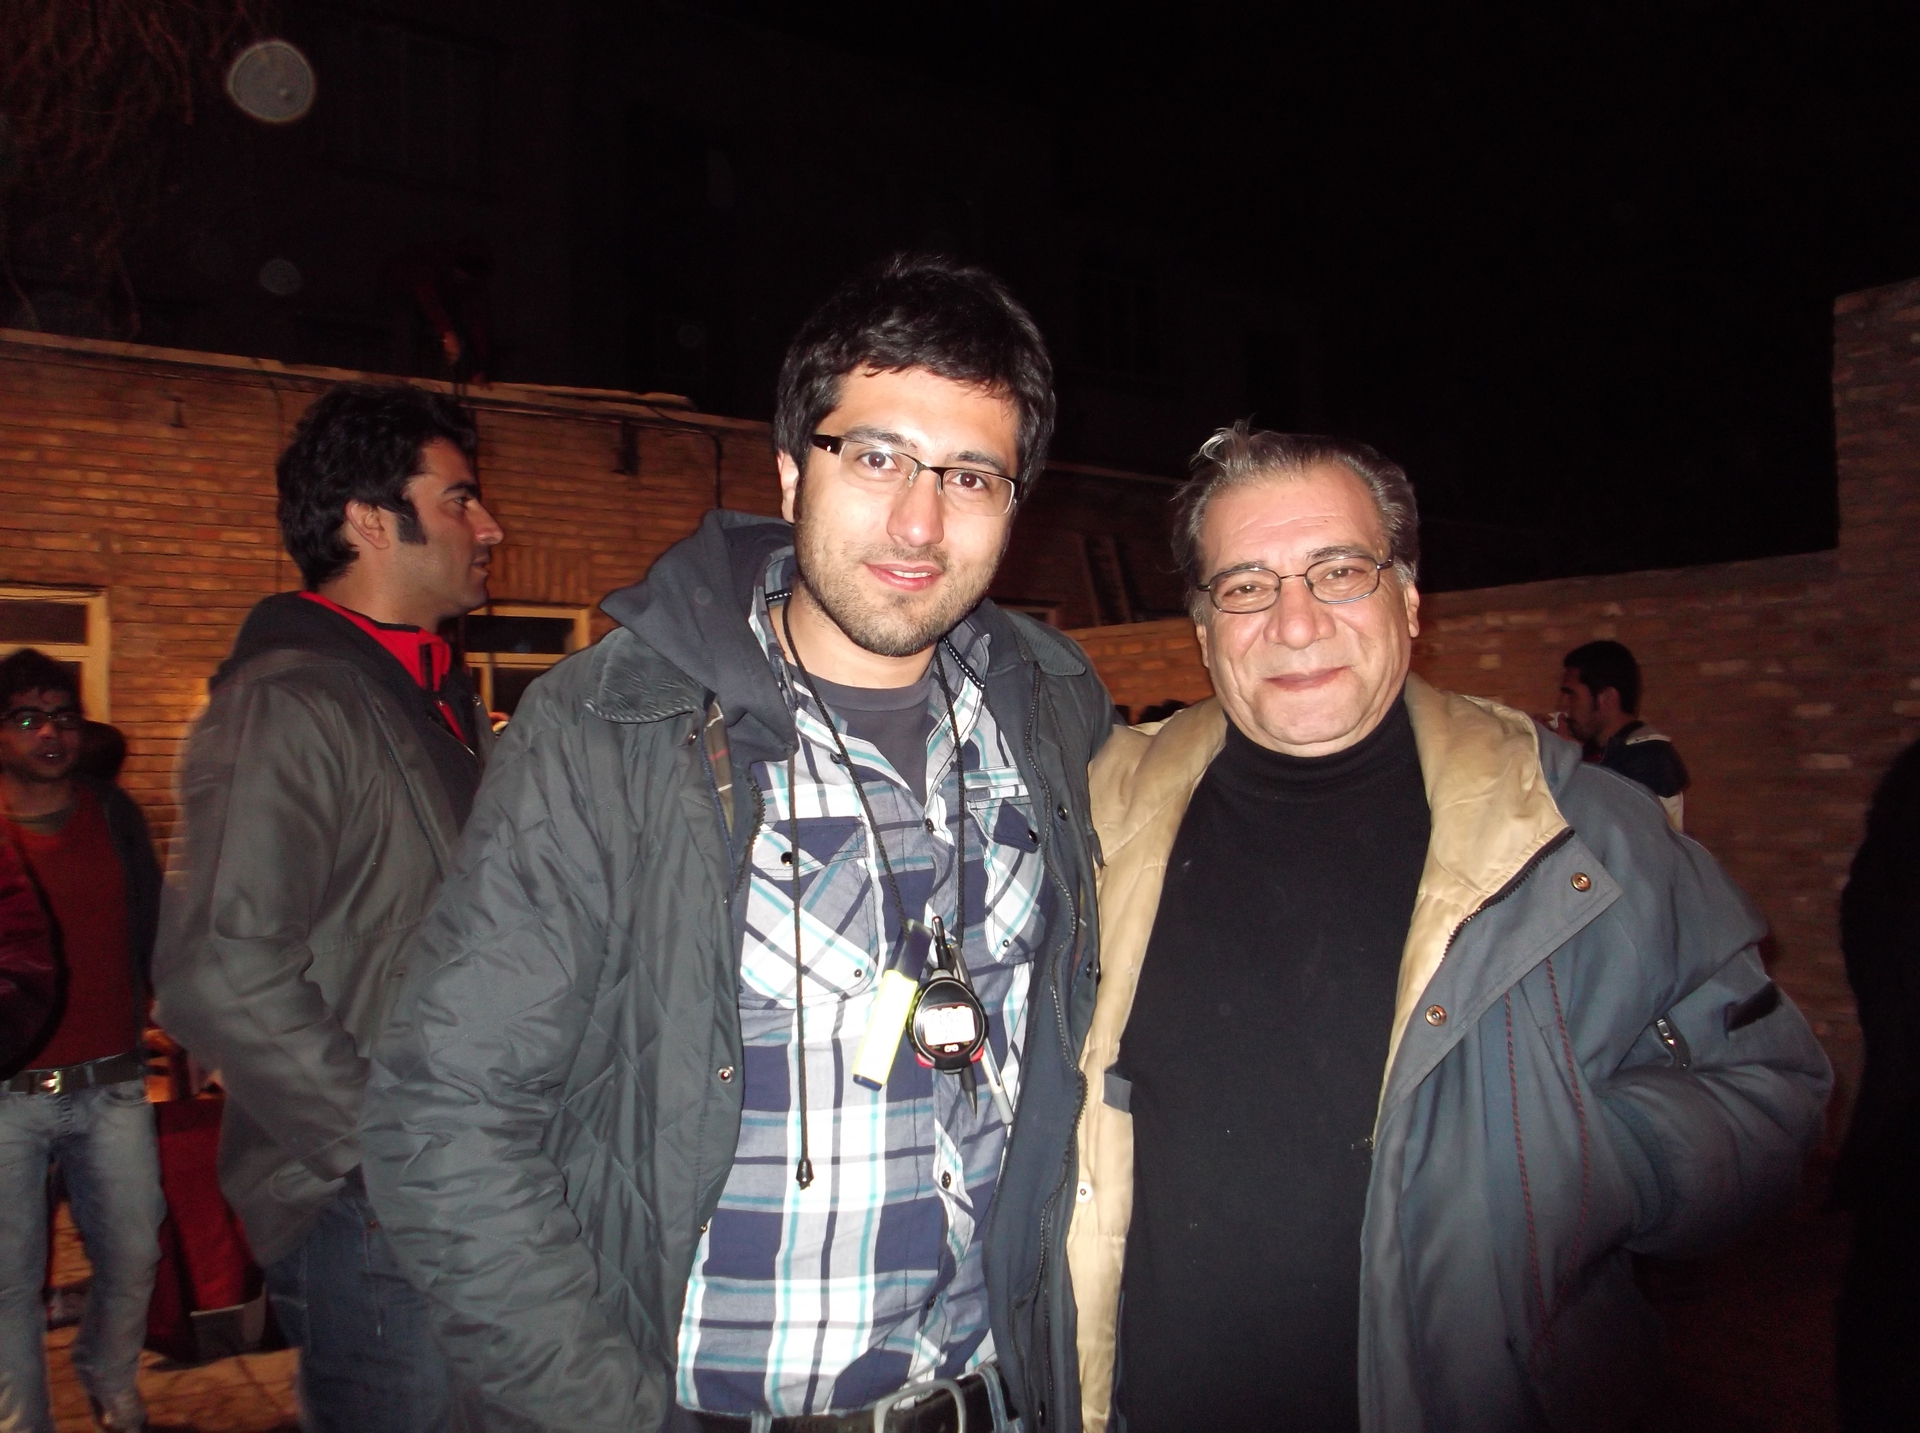 تصویری از رضا بقایی، منشی صحنه و بازیگر سینما و تلویزیون در حال بازیگری سر صحنه یکی از آثارش